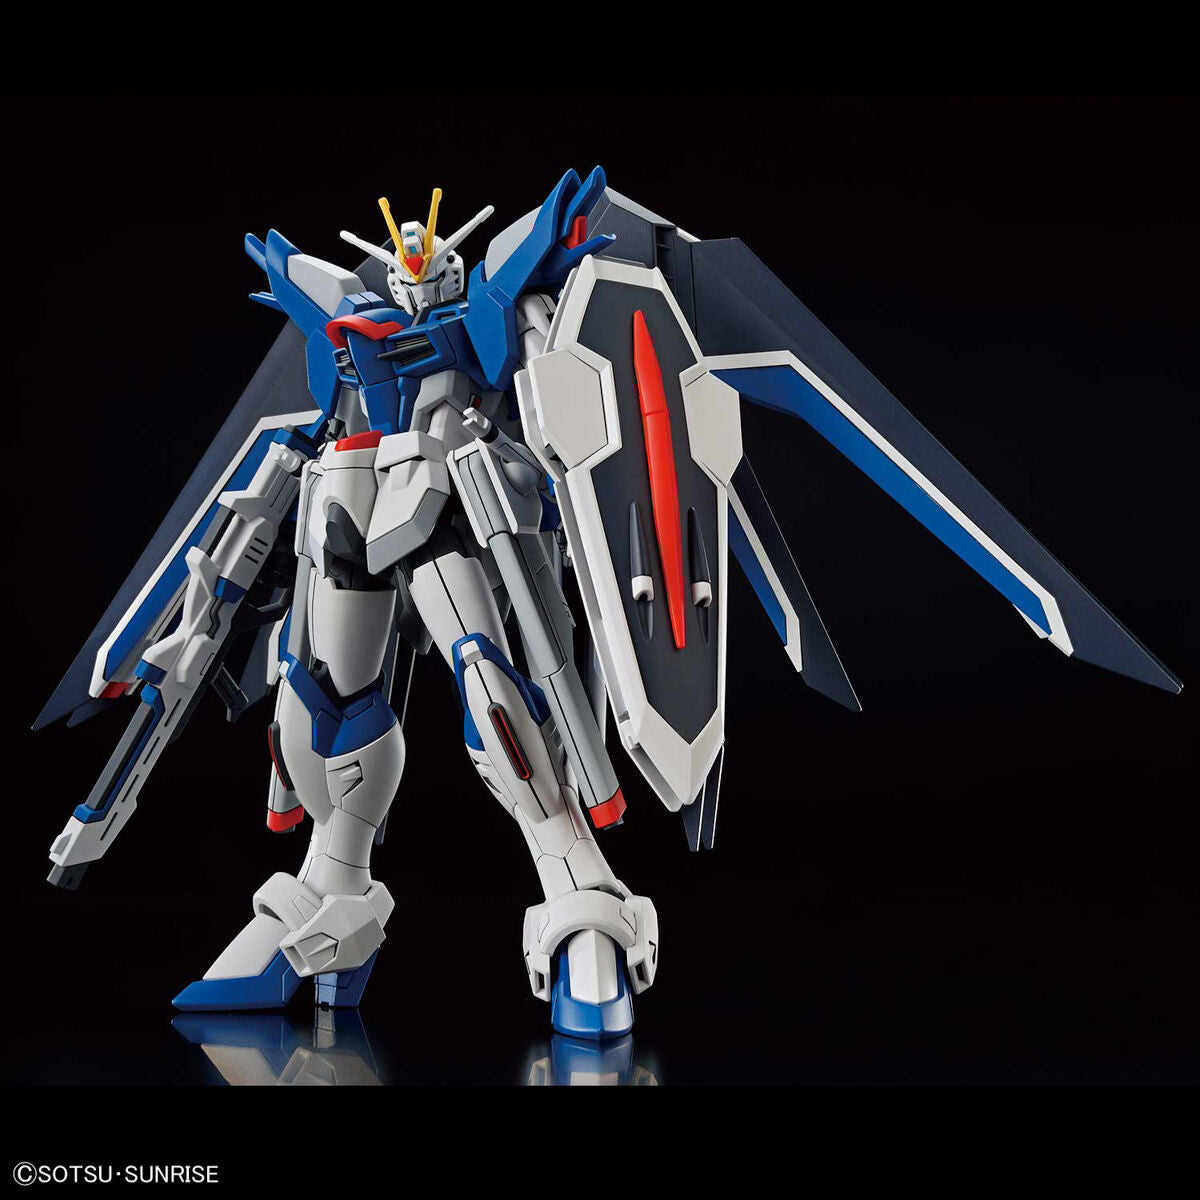 HG Rising Freedom Gundam